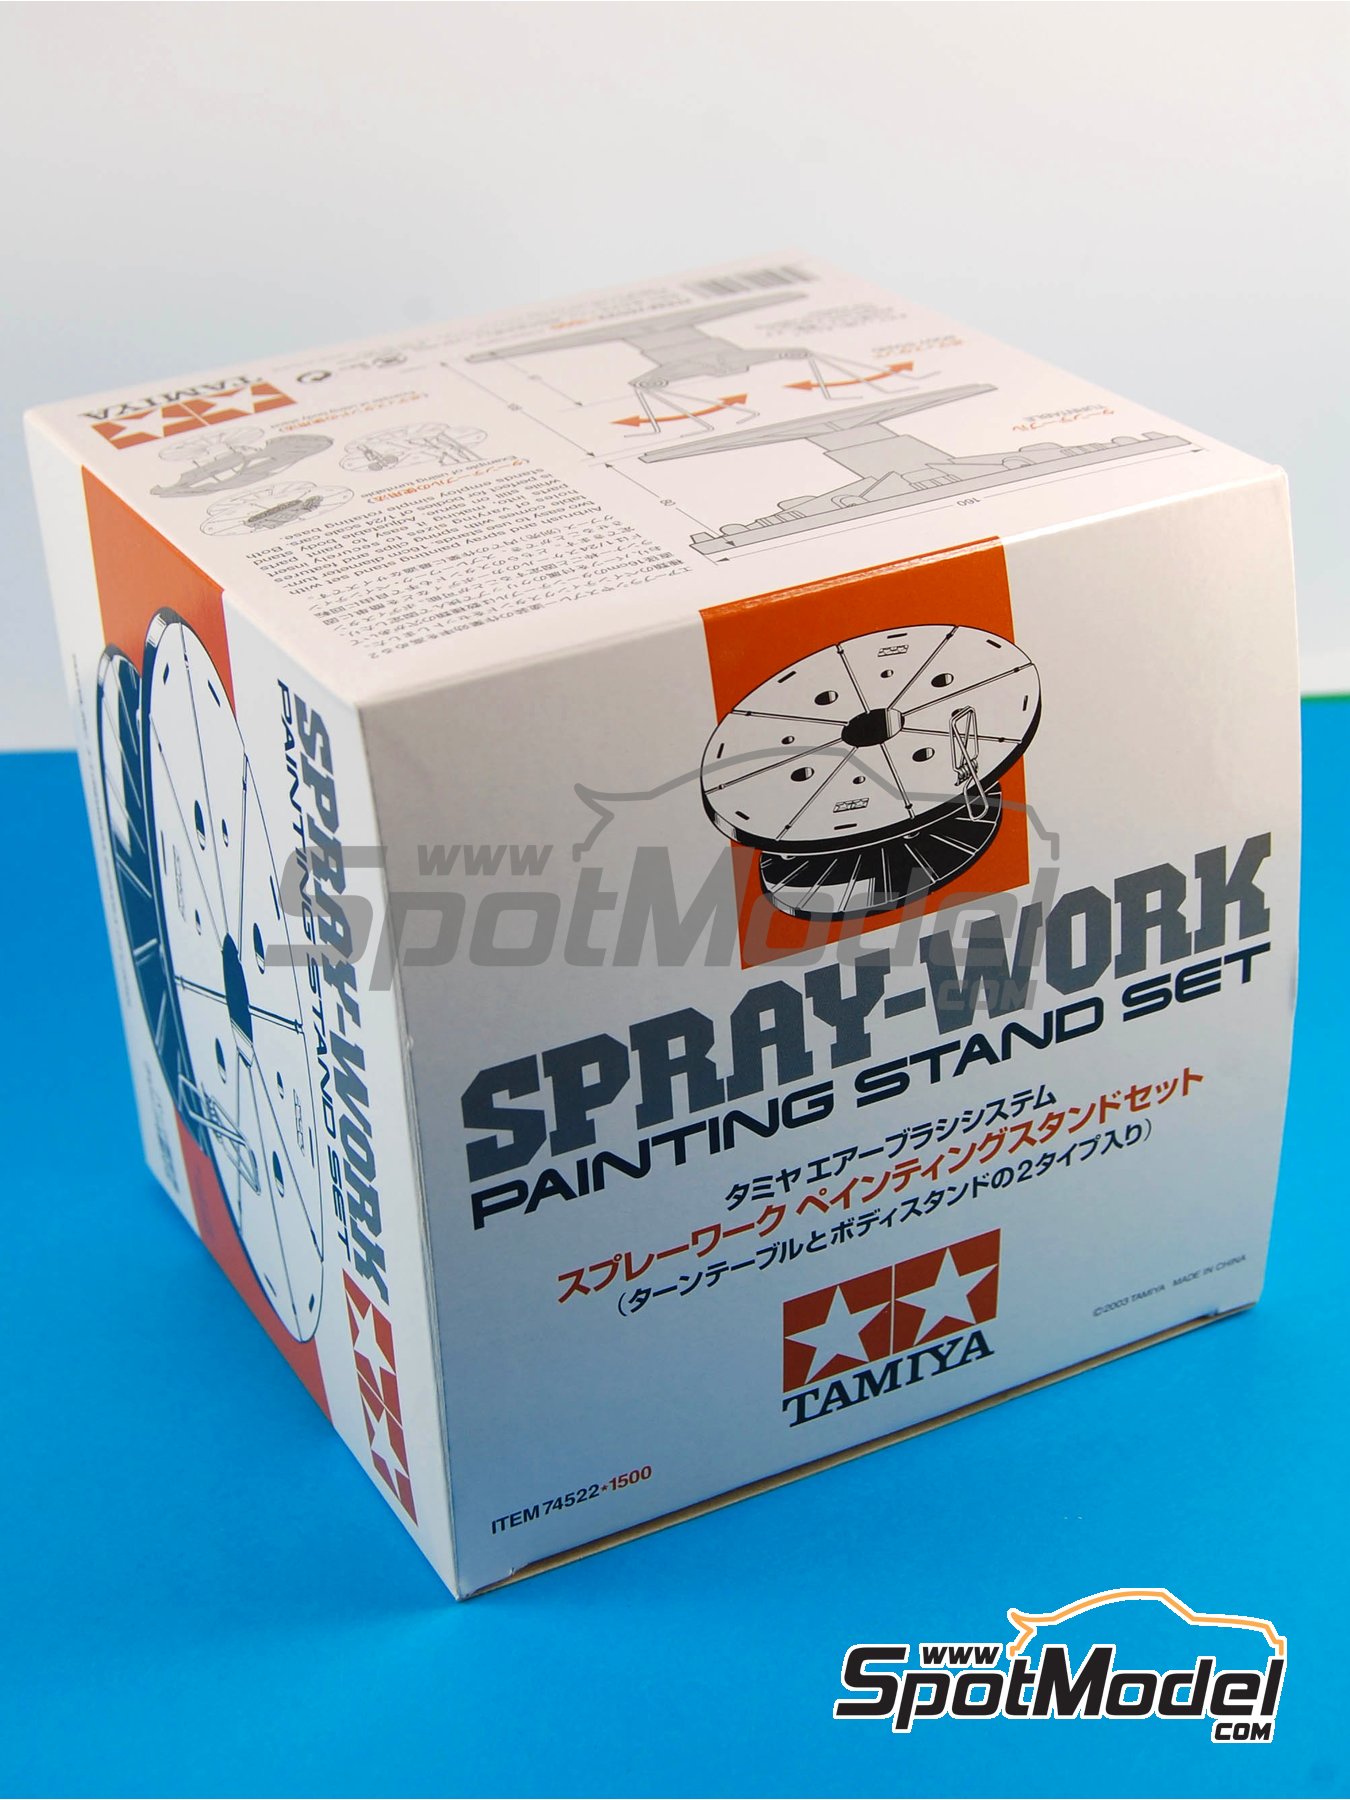 Tamiya Spray-Work Airbrush Stand II 